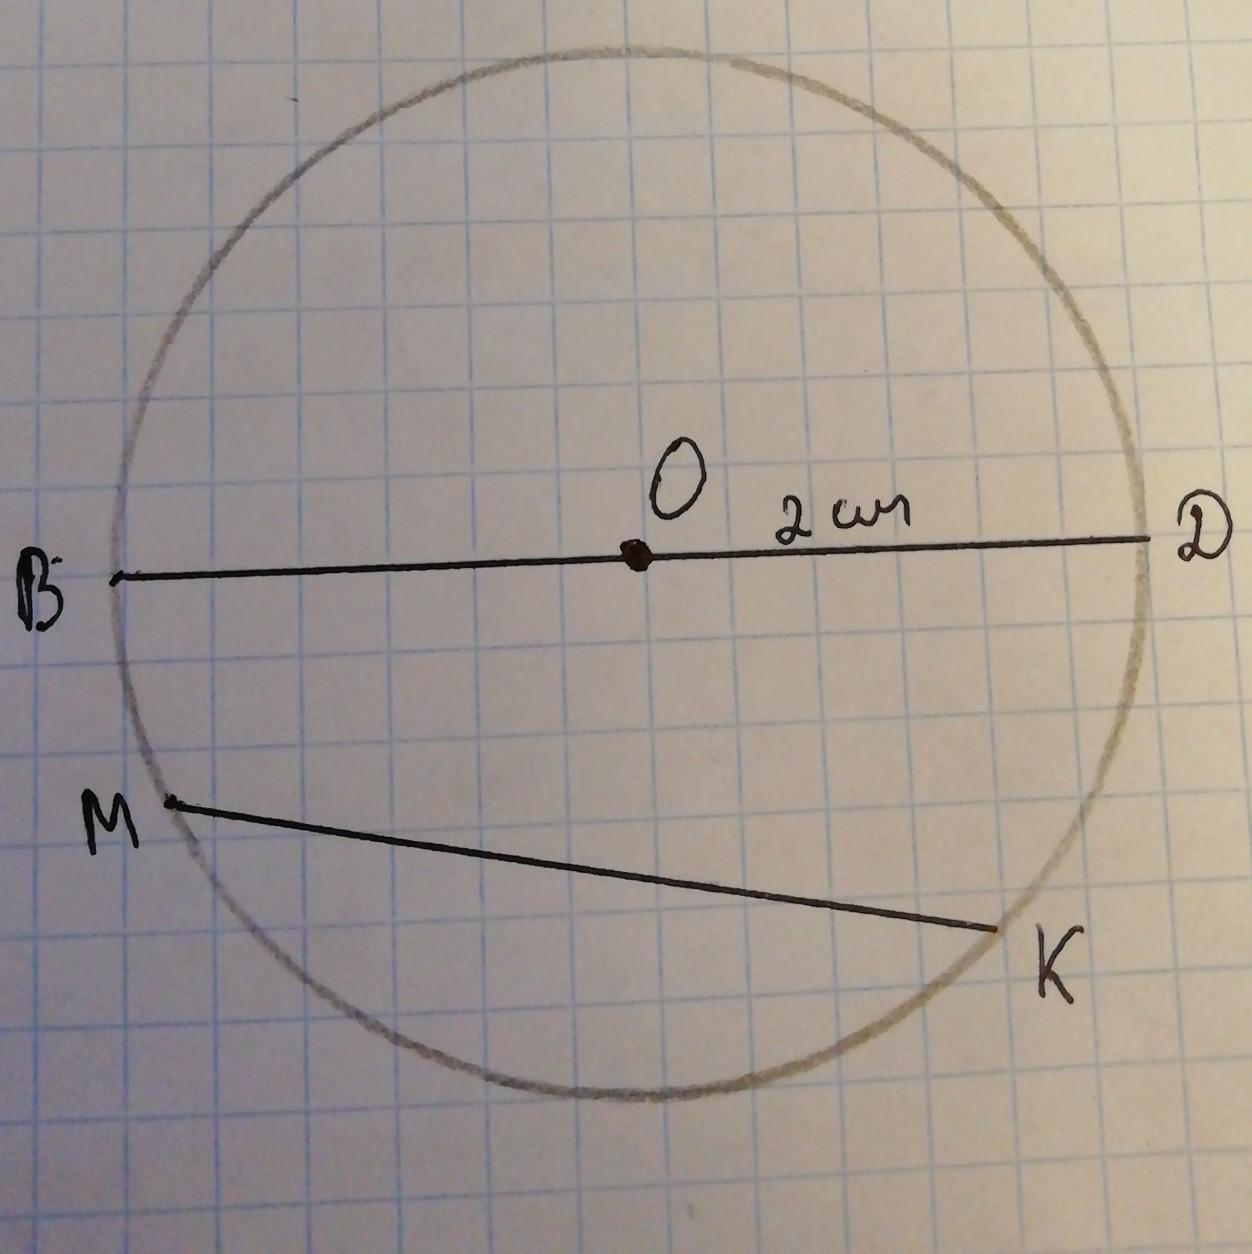 Построить окружность с центром в точке с и радиусом 2см